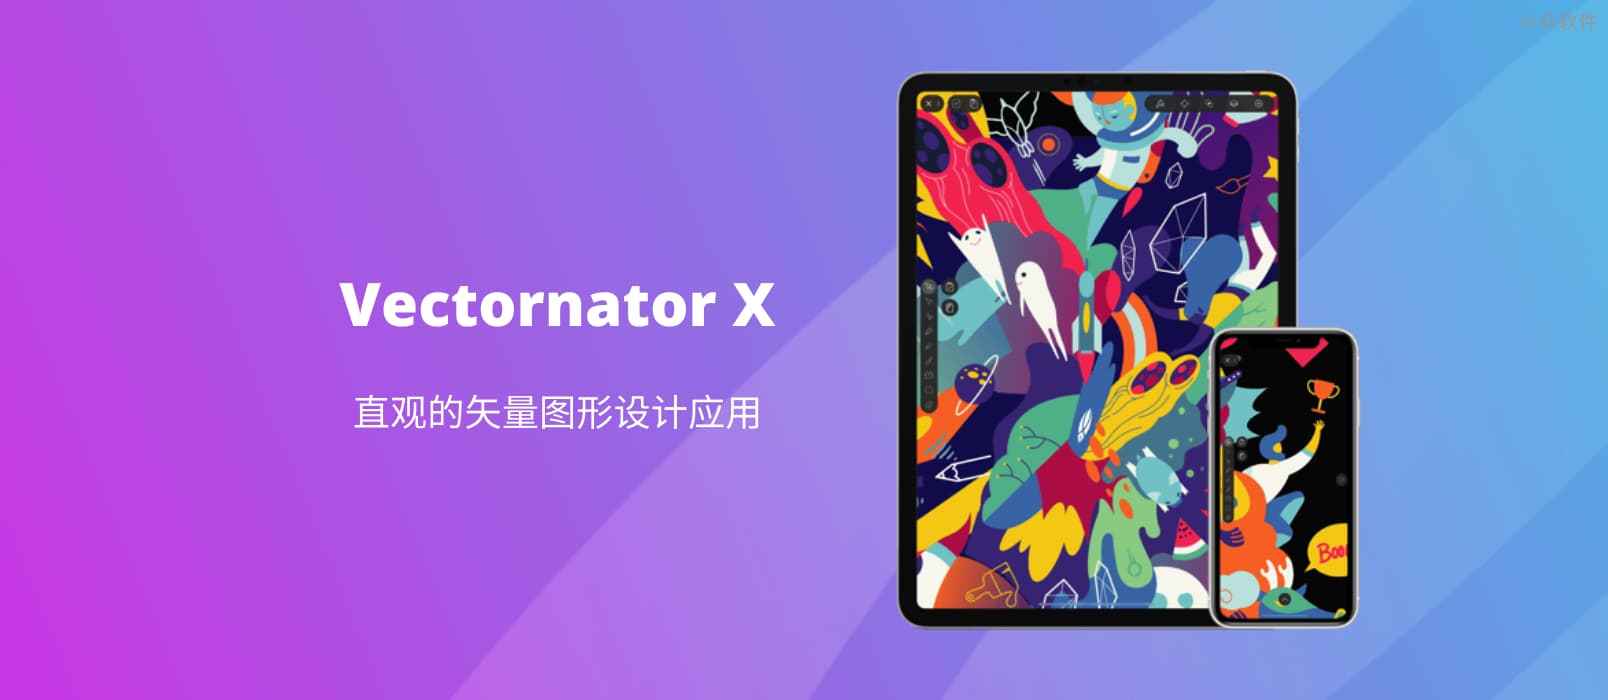 矢量图形设计应用 Vectornator X 限免[iOS]